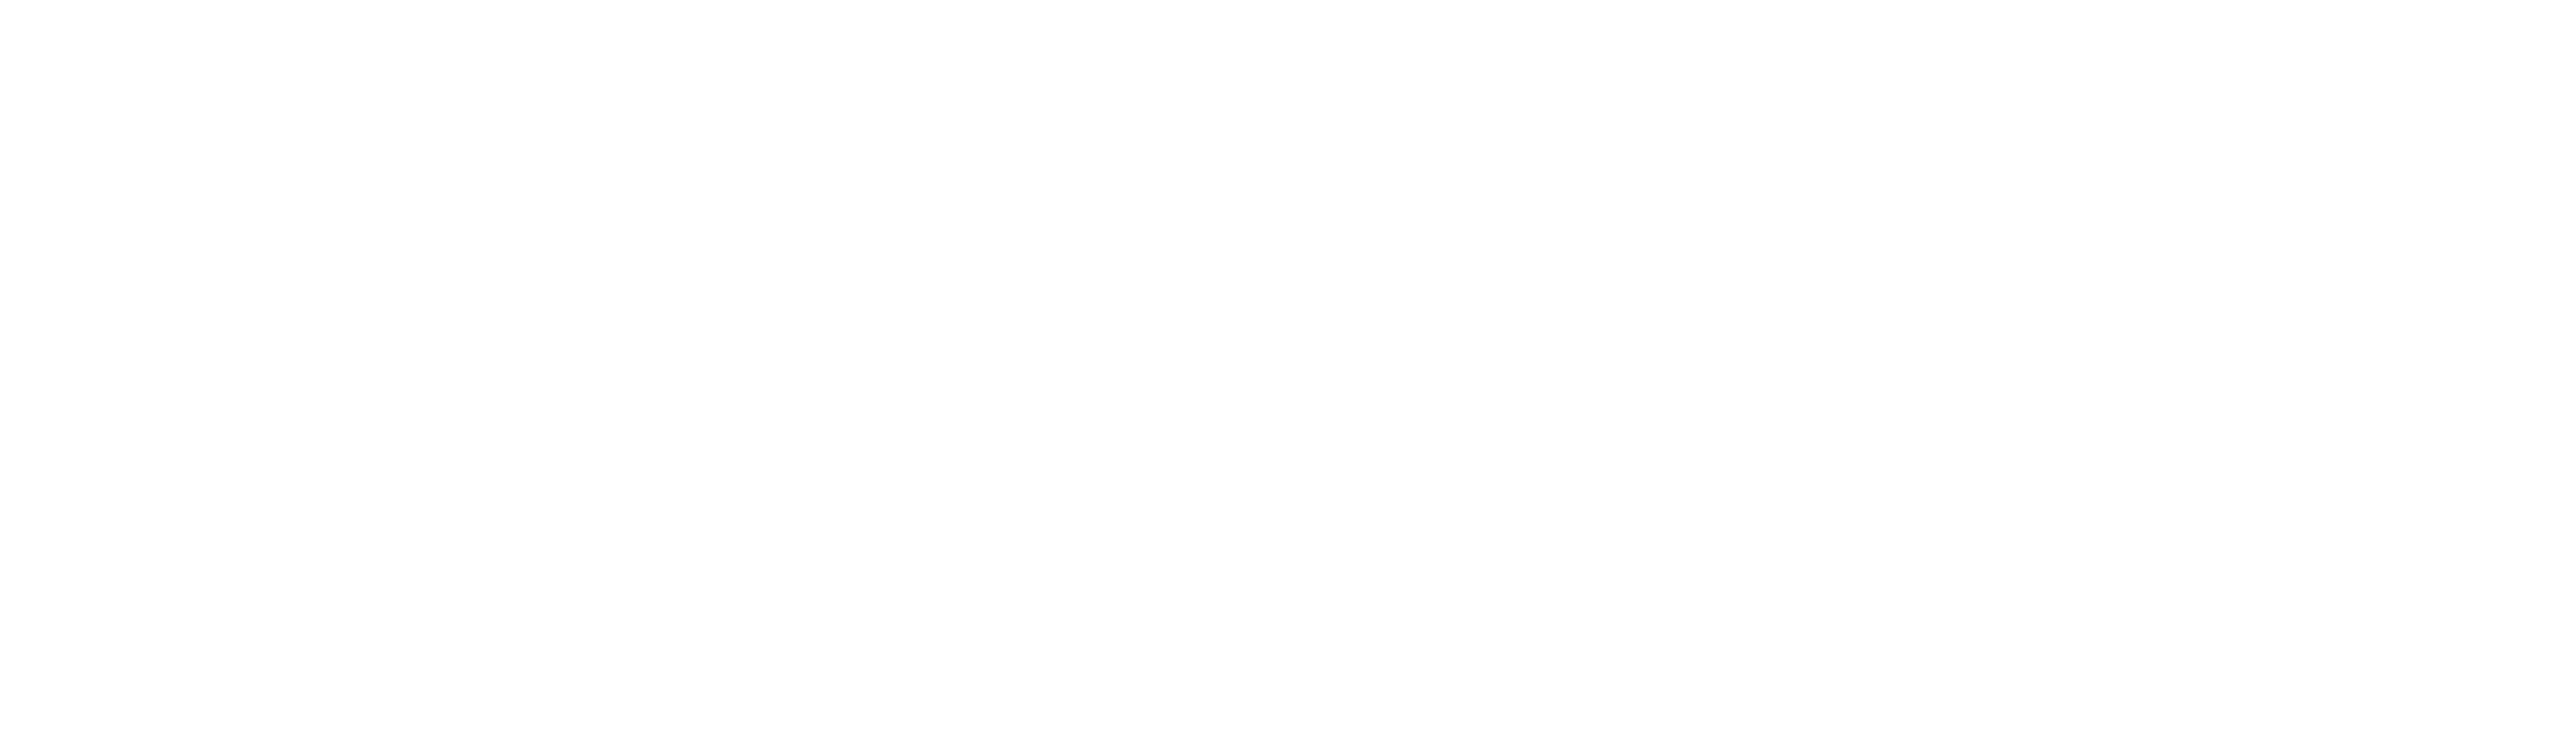 CB BUS I Autobusová doprava České Budějovice